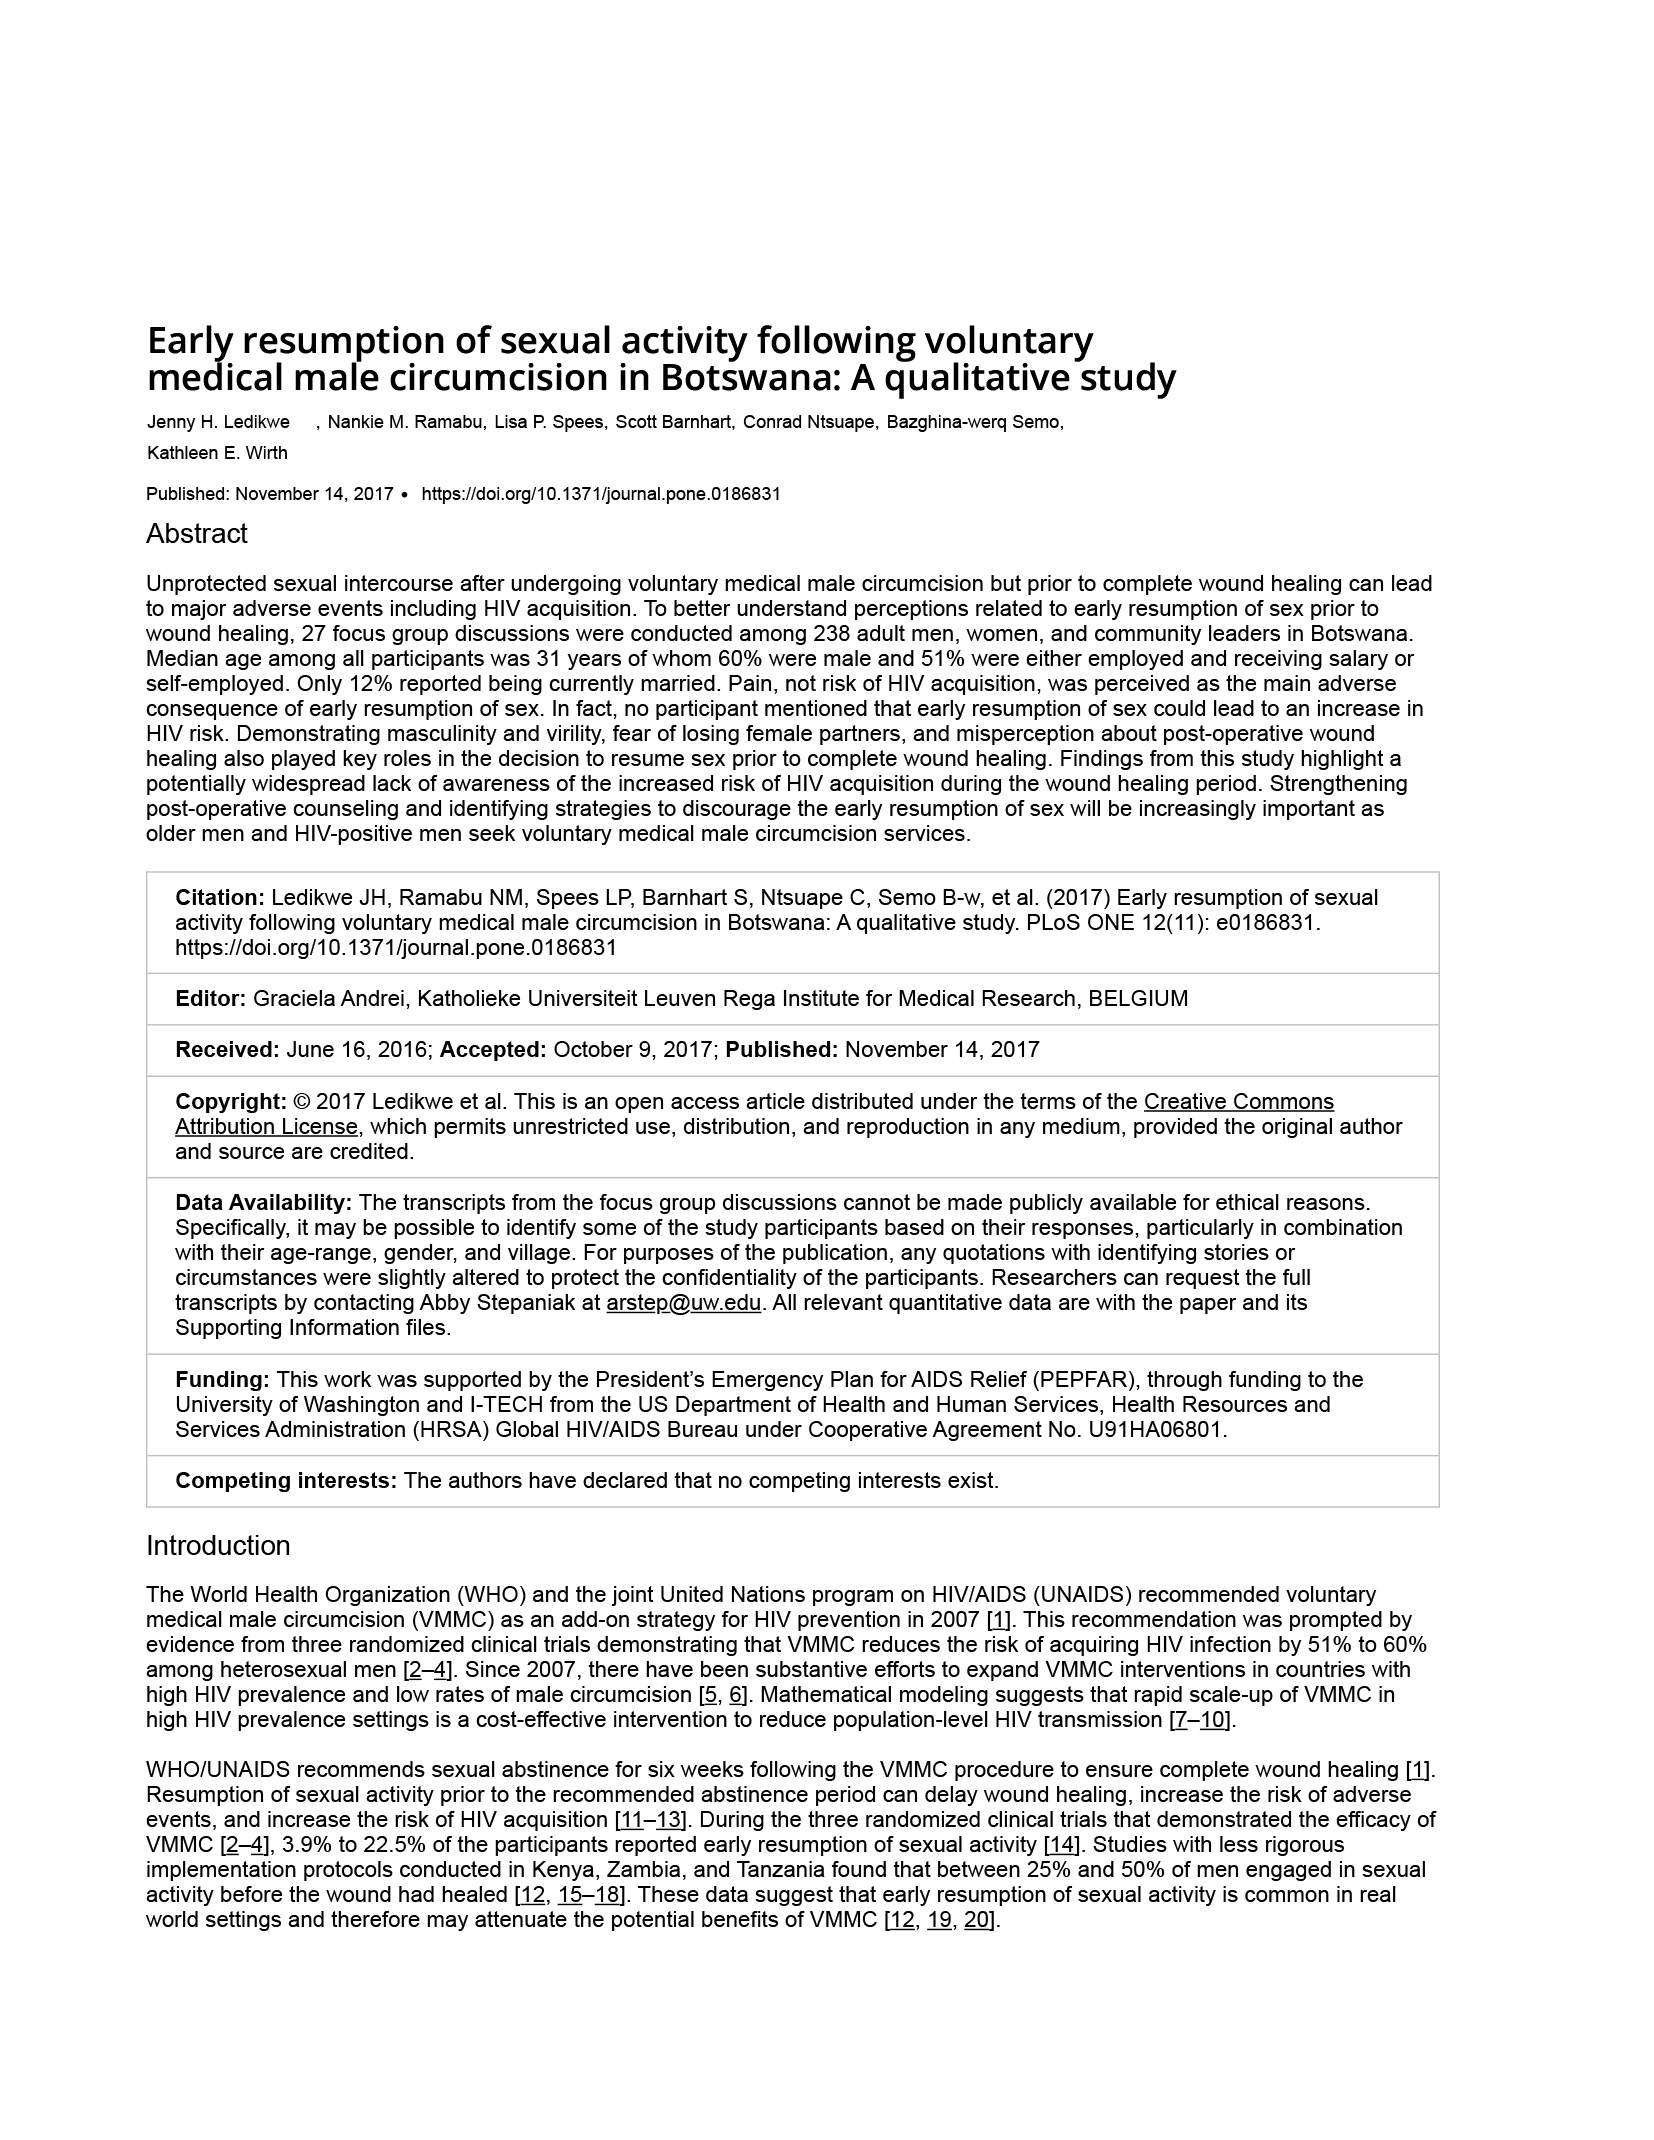 Reanudación precoz de la actividad sexual tras la circuncisión médica masculina voluntaria en Botsuana: Un estudio cualitativo - portada